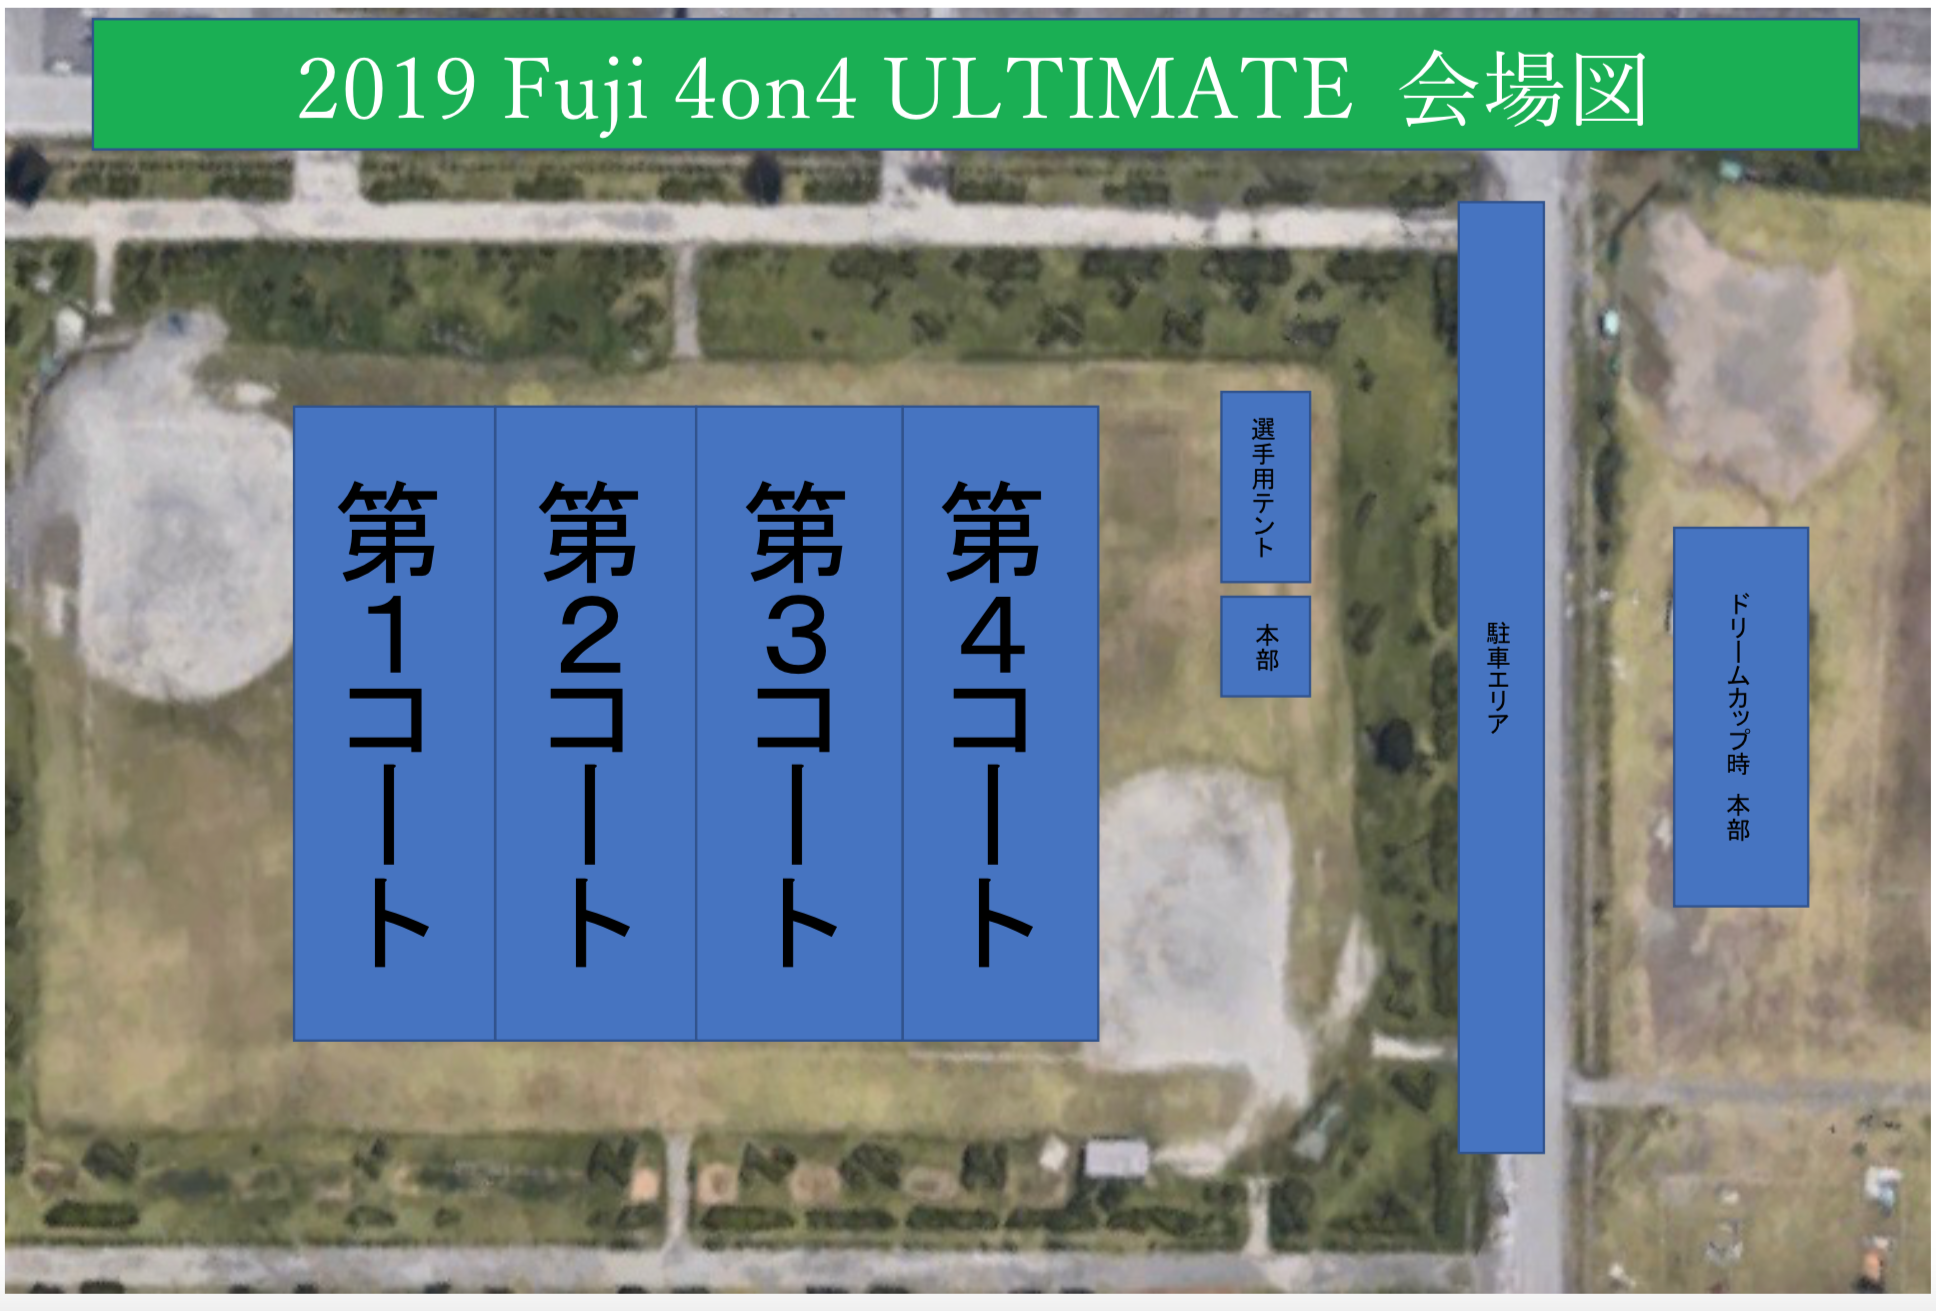 2019 Fuji 4on4 ULTIMATE}